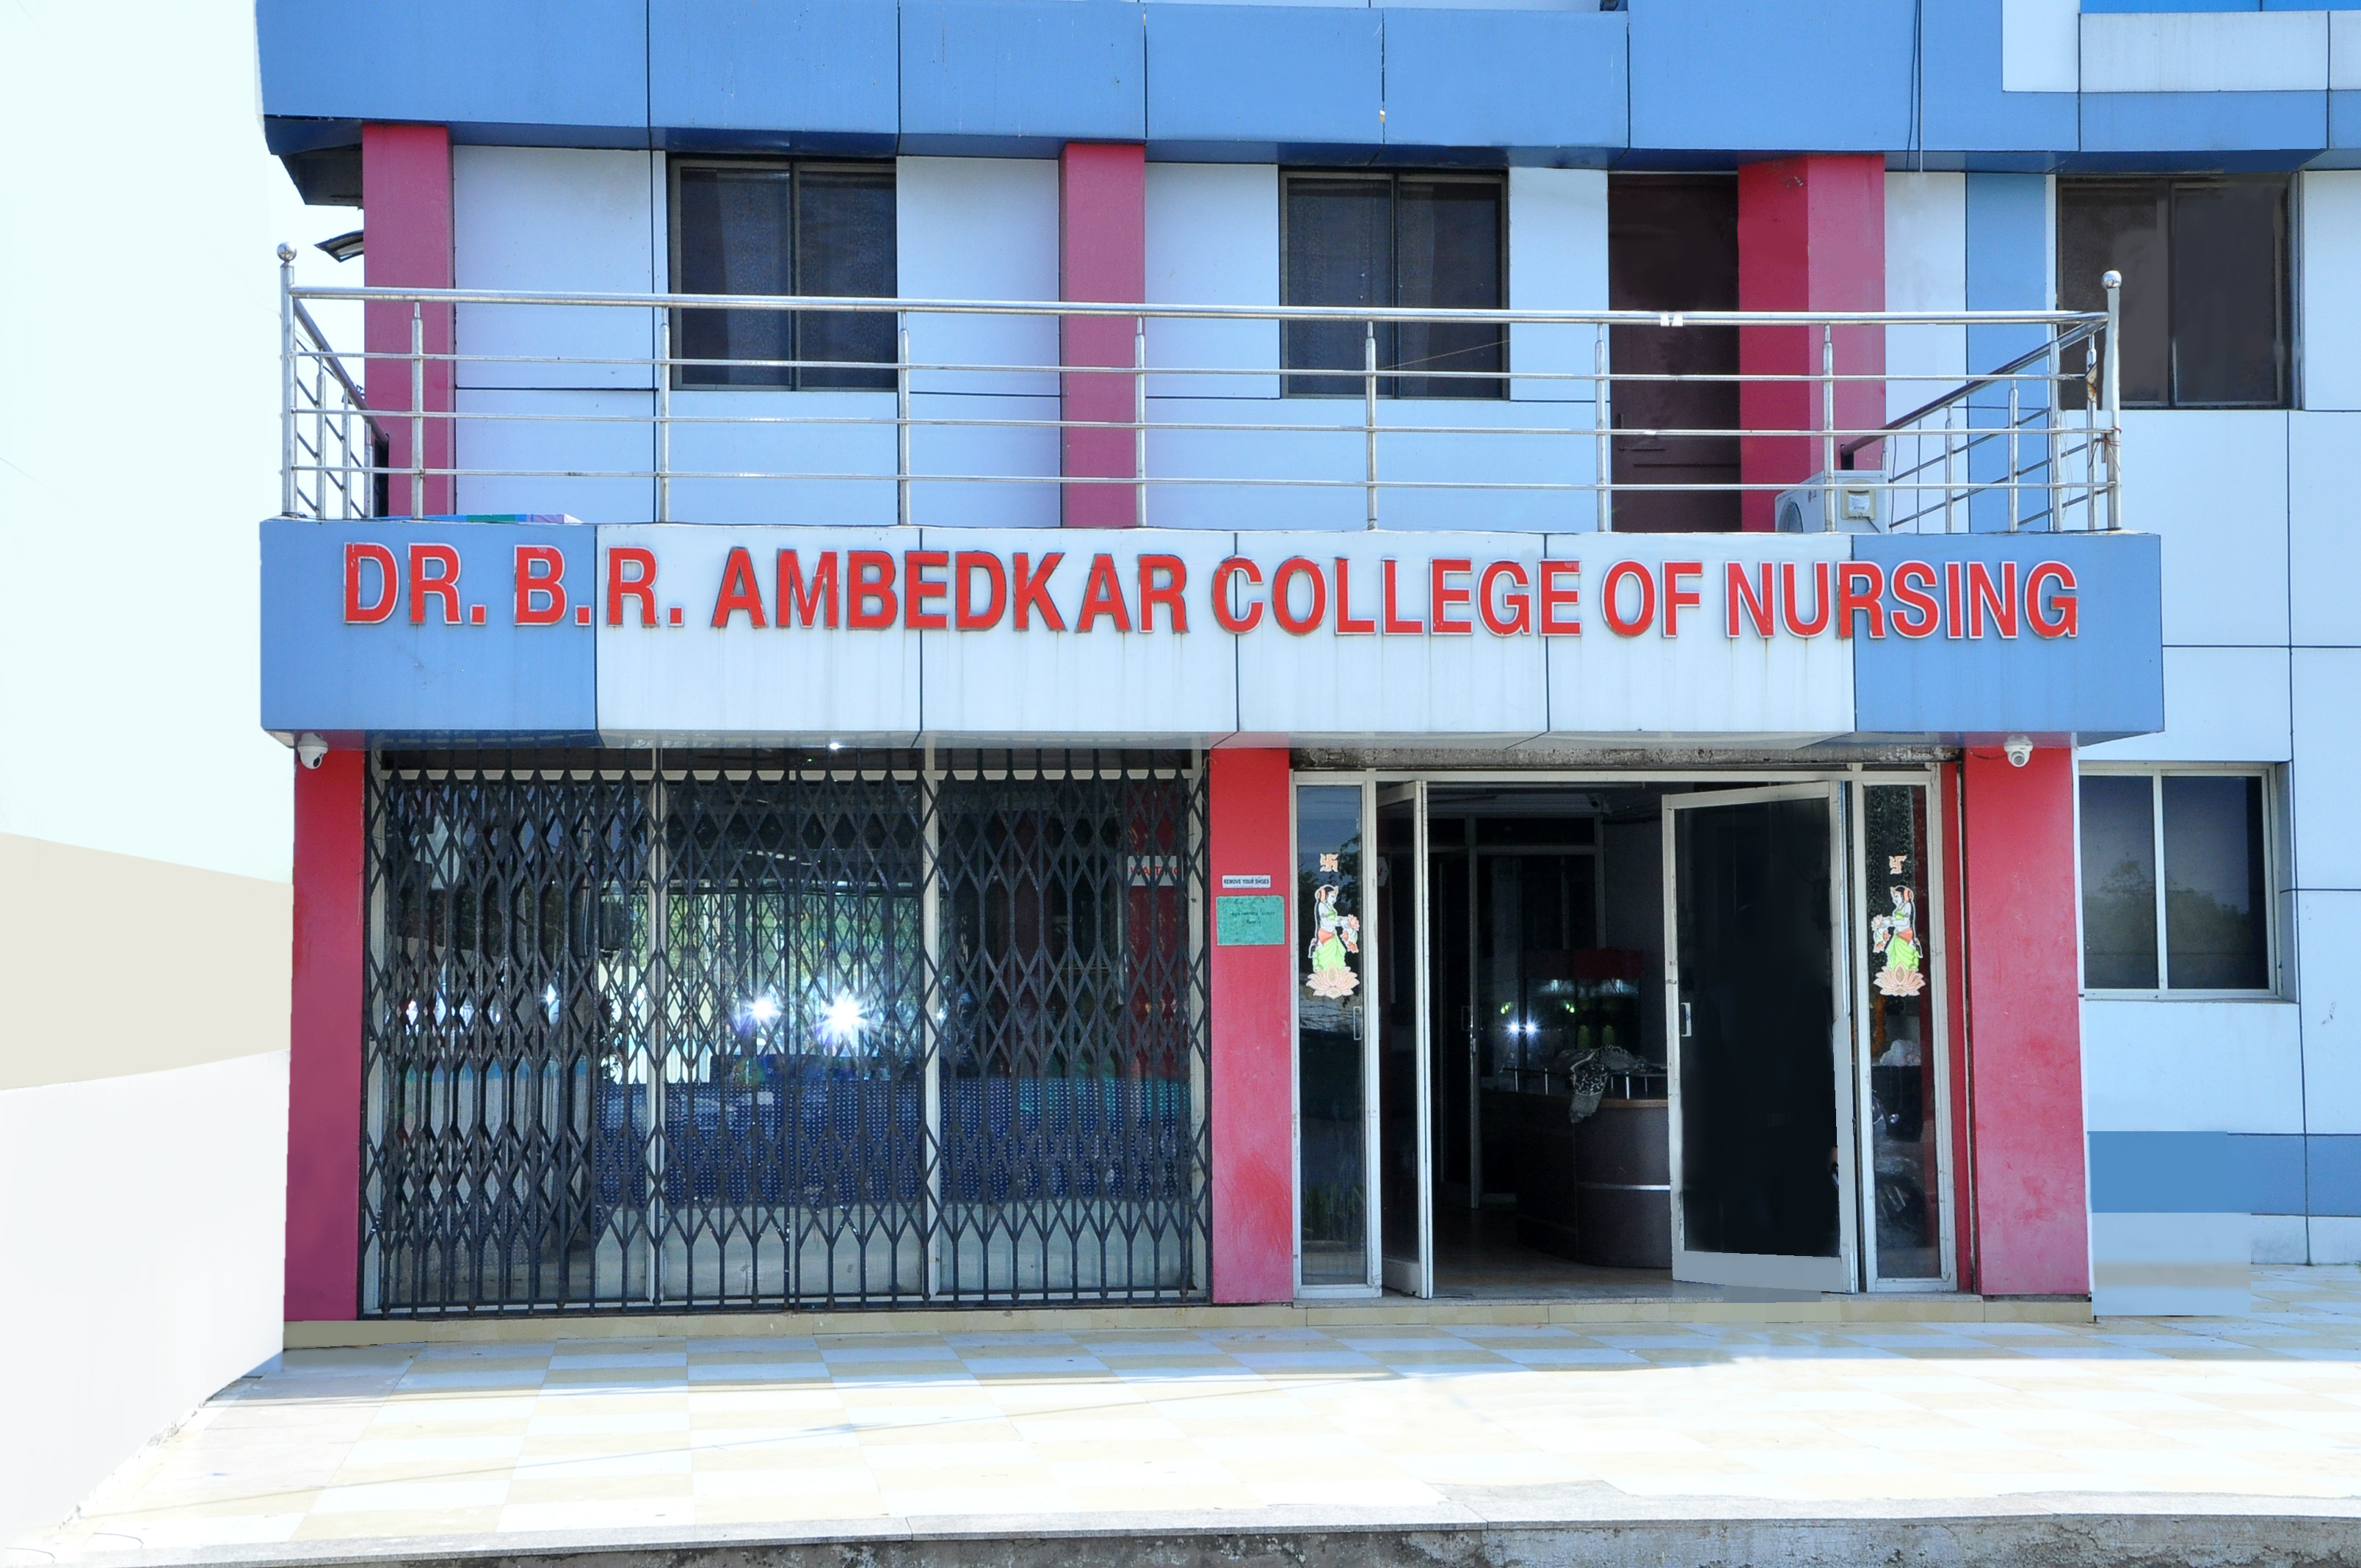 Dr. B.R. Ambedkar College of Nursing